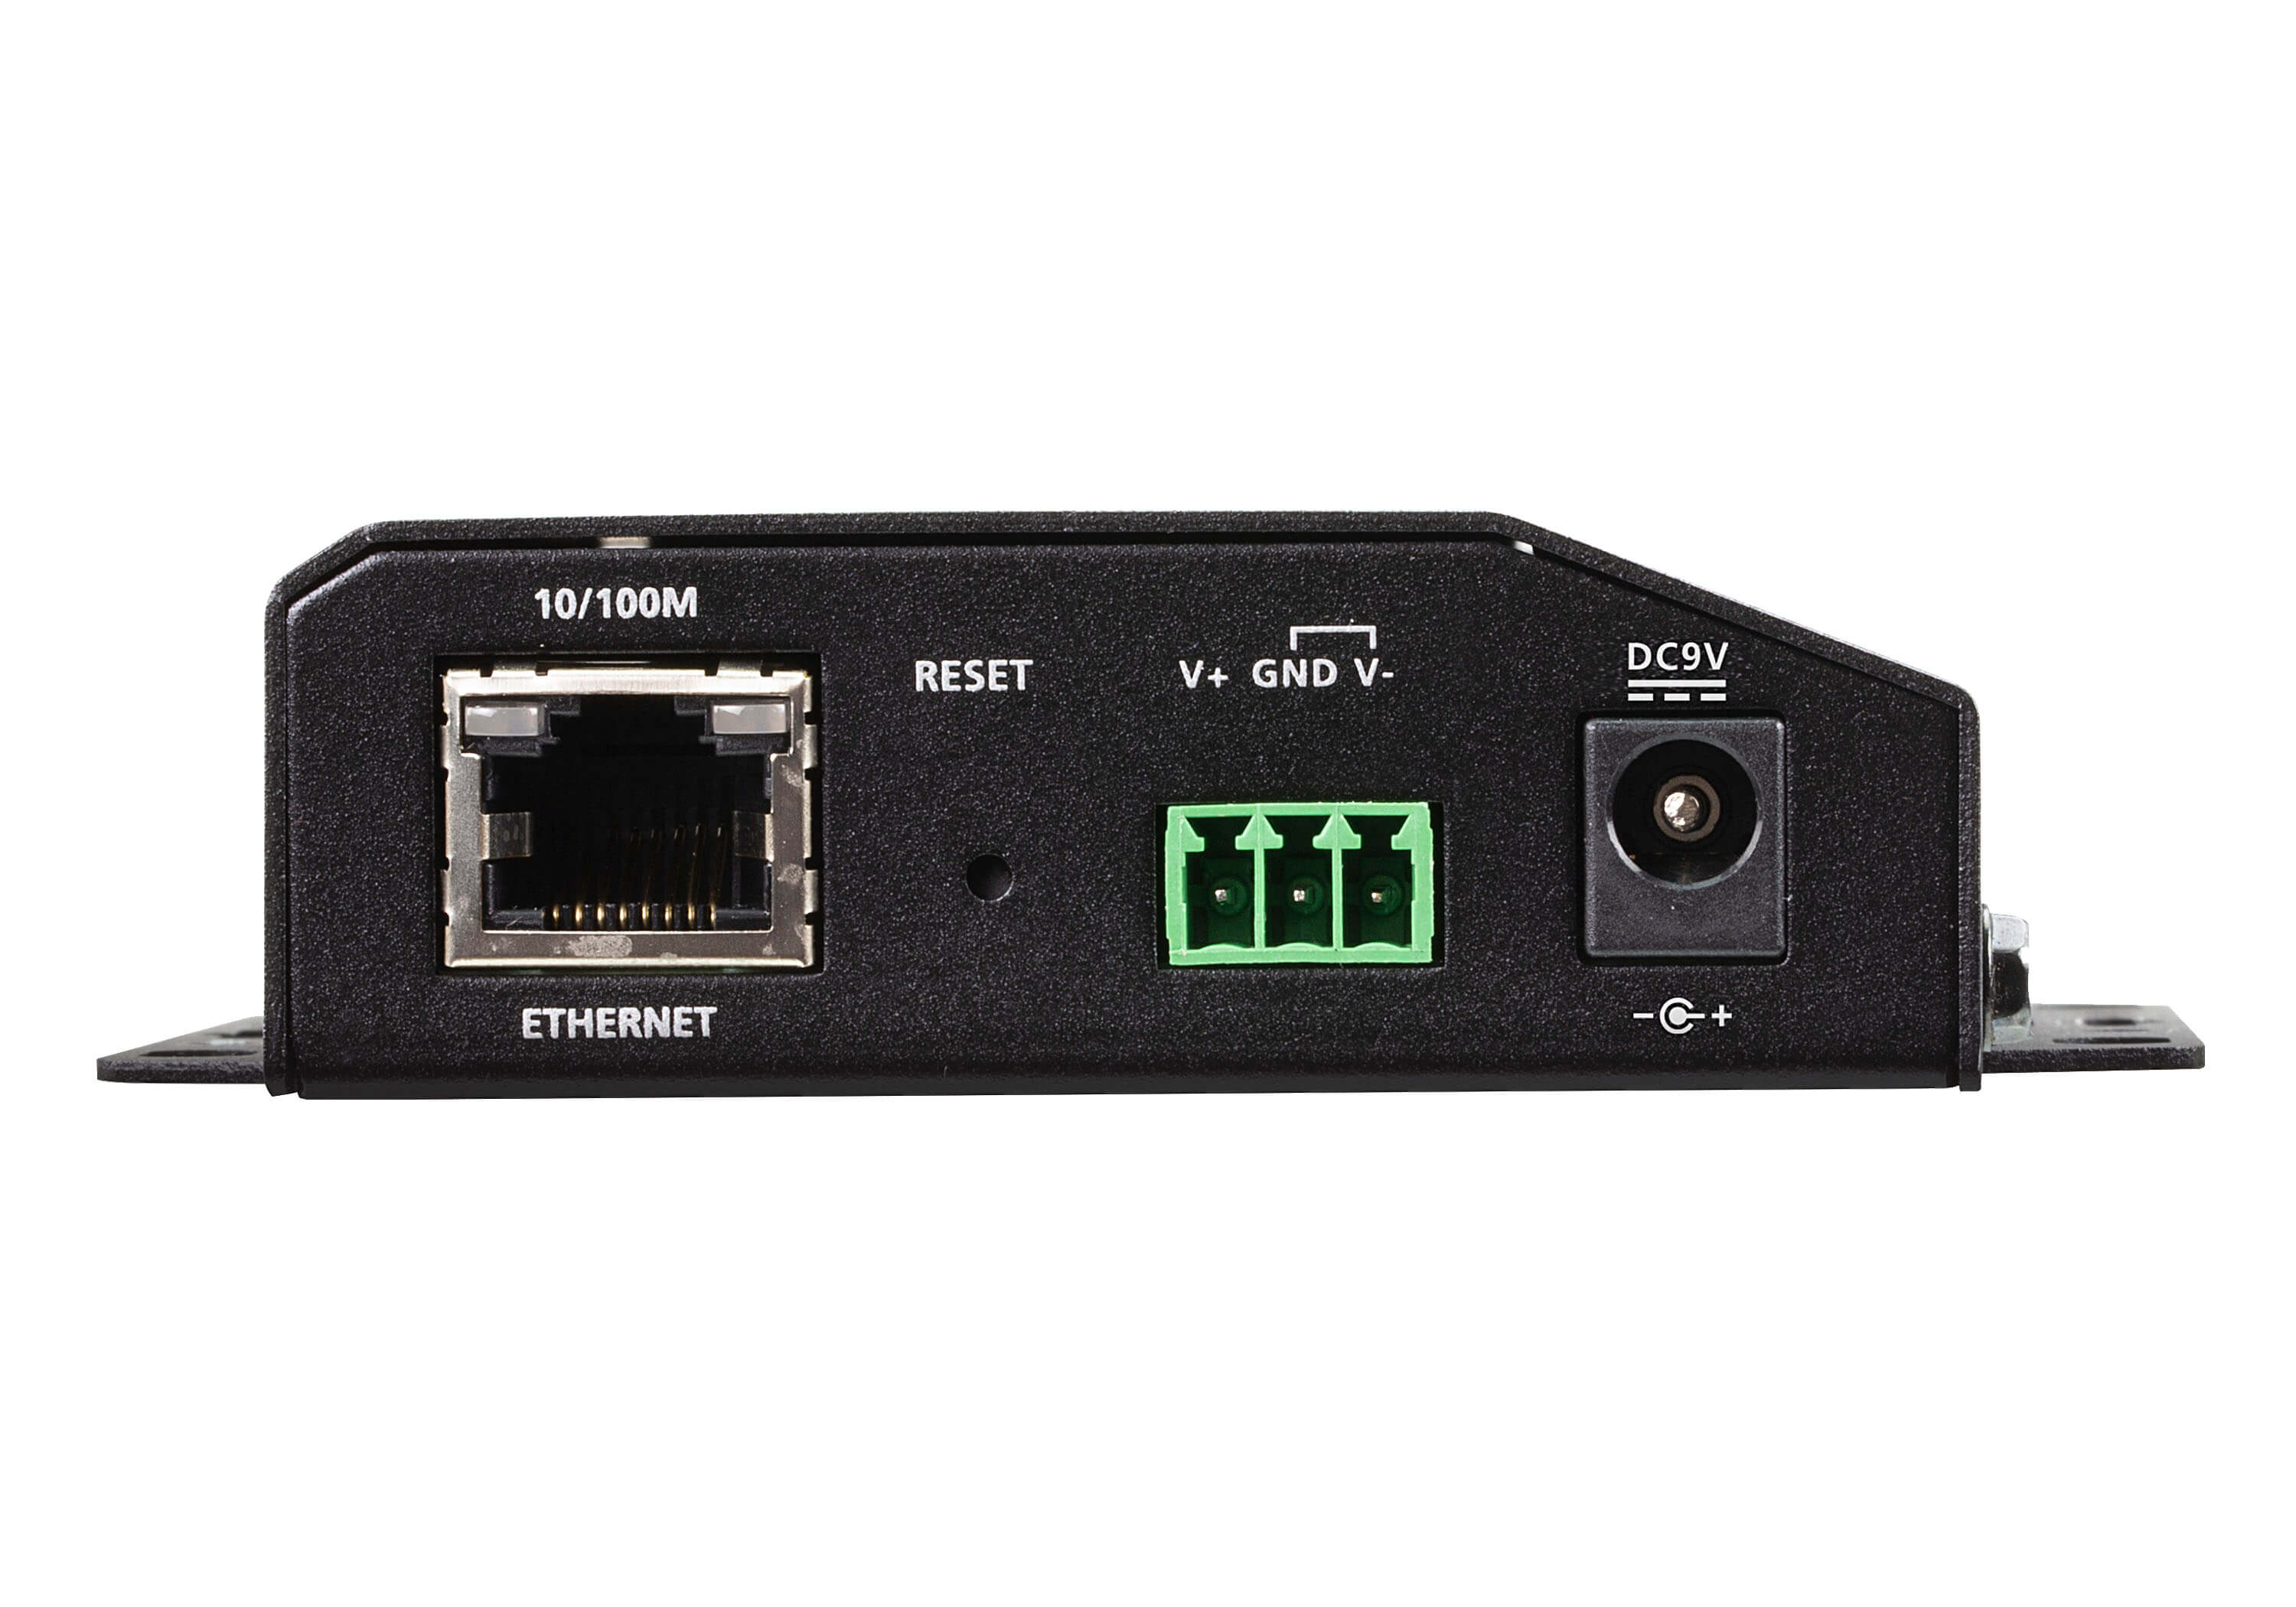 取寄 ATEN SN3401P 1ポートRS-232C/422/485セキュアデバイスサーバー（PoE対応）